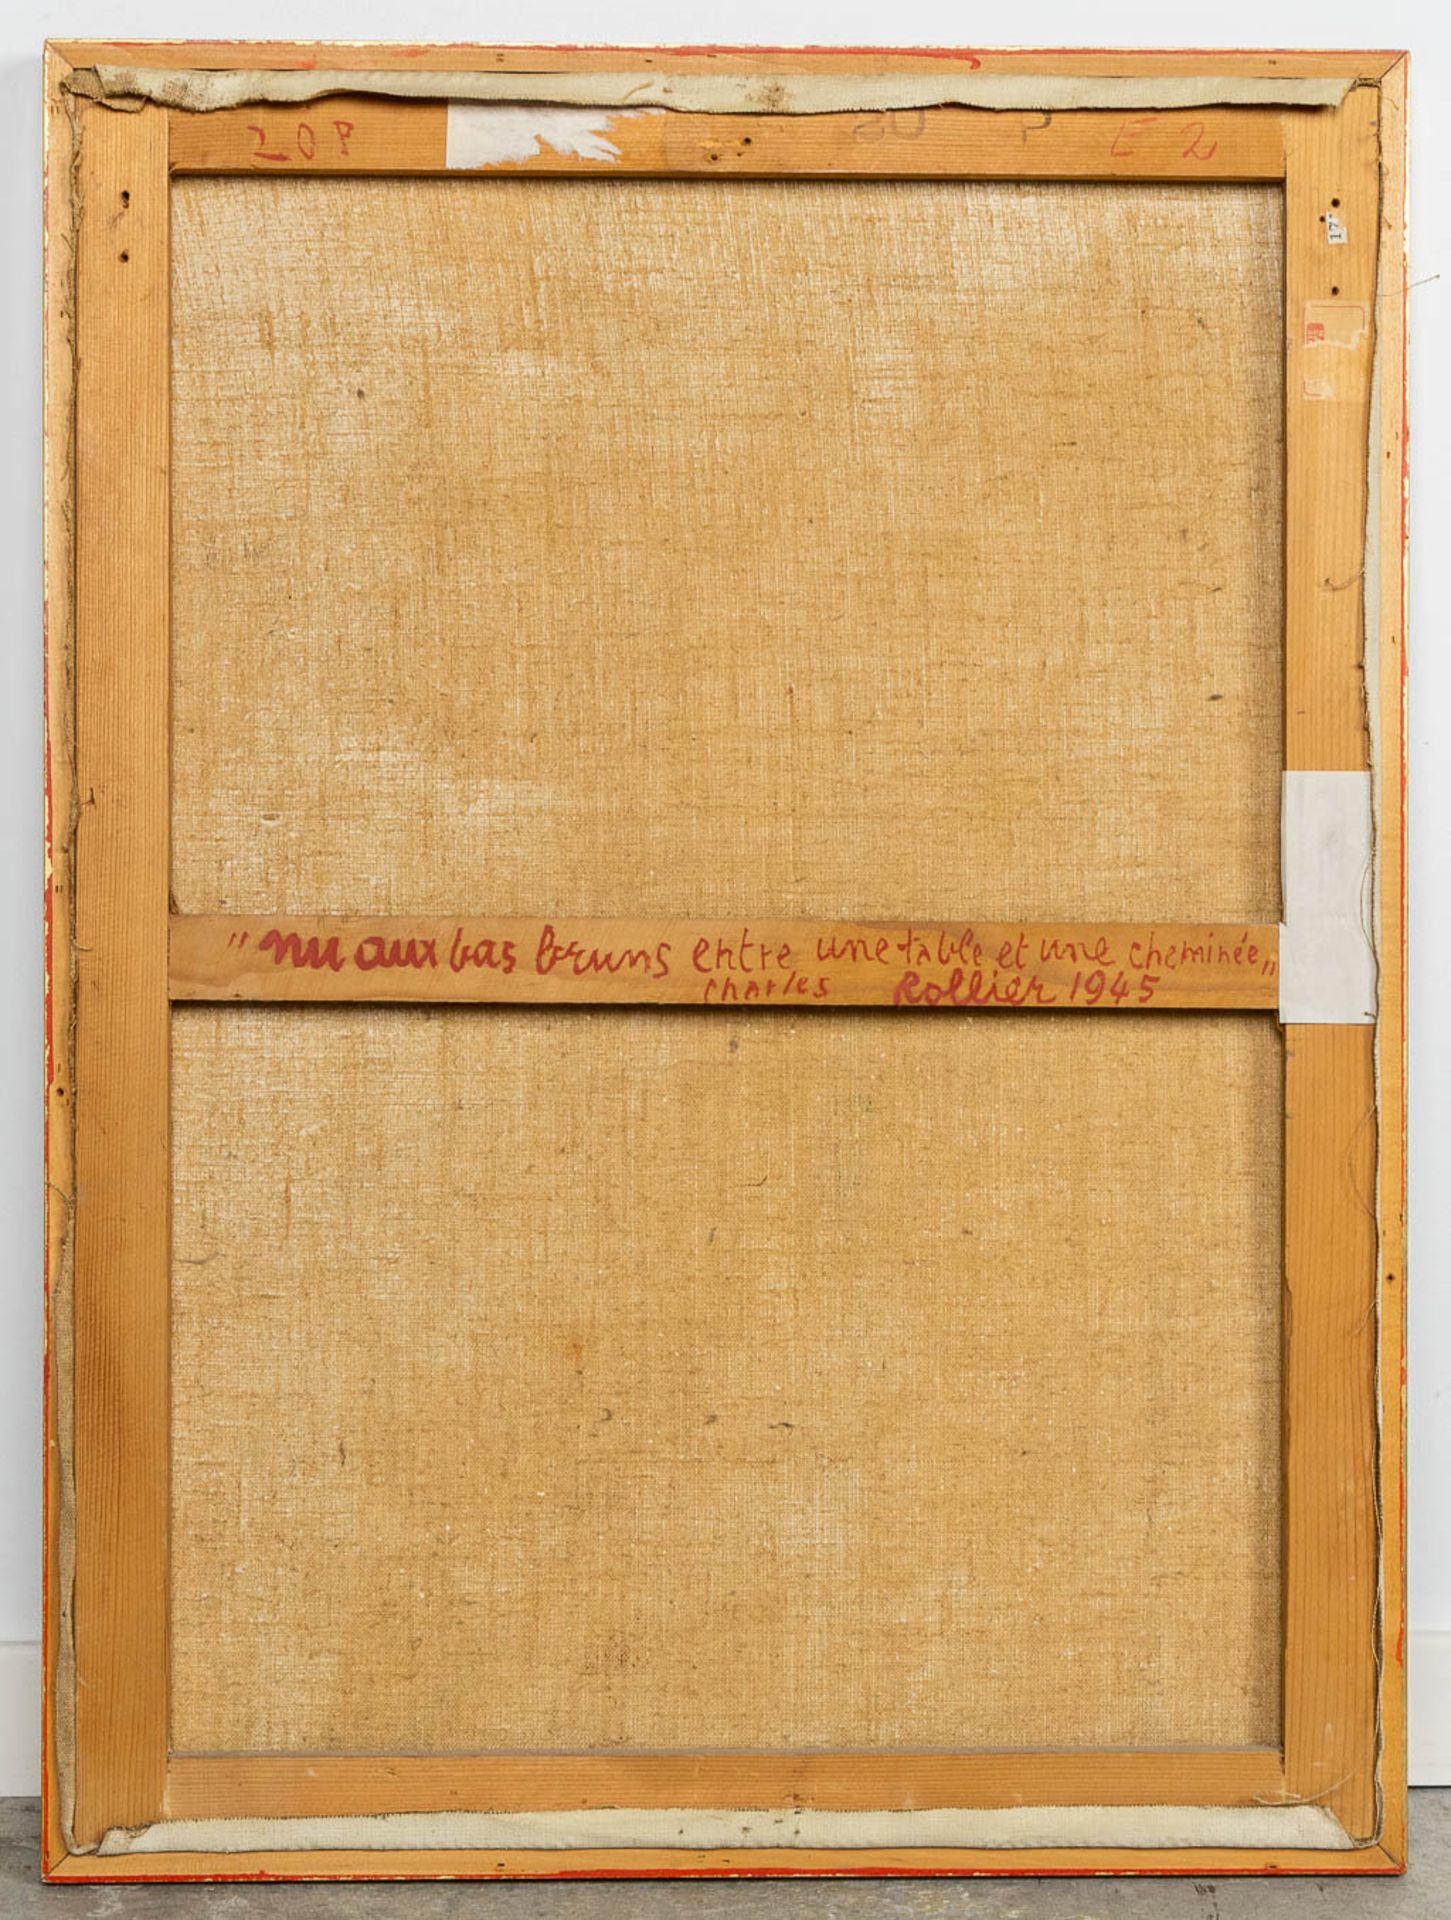 Charles ROLLIER (1912-1968) 'Nu aux bas bruns entre une table et une cheminée' oil on canvas. 1945. - Image 7 of 8